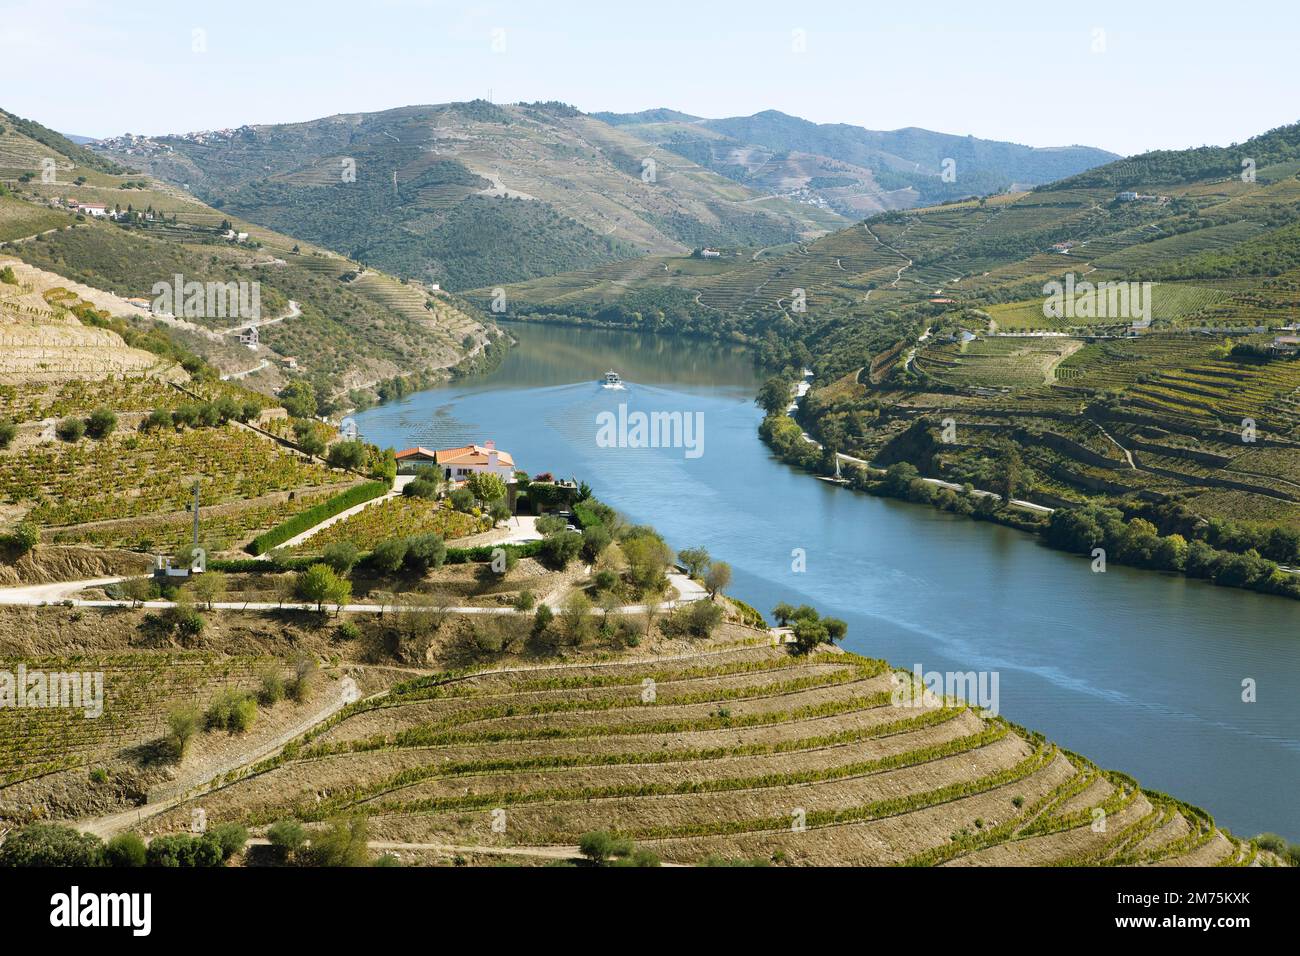 Wine terraces in the Alto Douro Valley on the Douro River, wine region with protected designation of origin, Norte region, Portugal Stock Photo